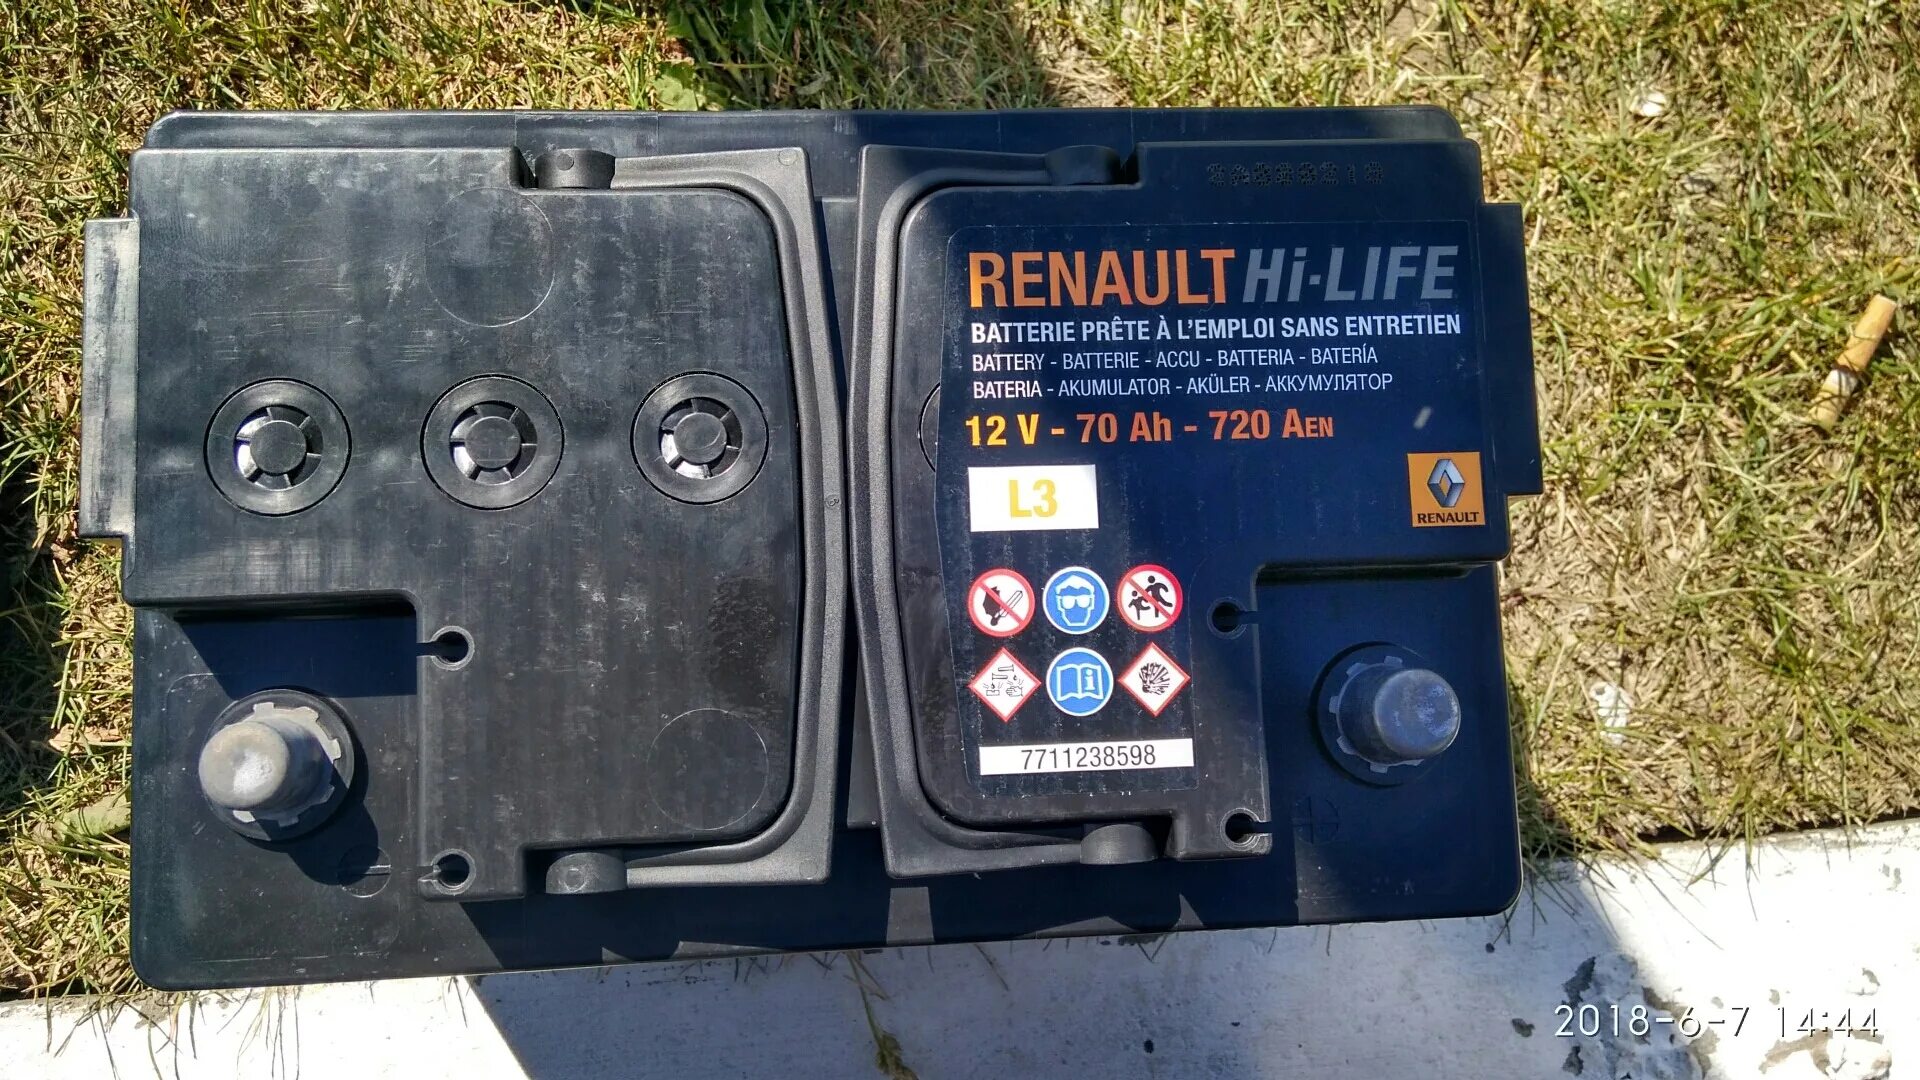 Аккумулятор рено оригинал. Аккумулятор Renault Fluence 1.6. Renault Fluence 2011 аккумулятор. Аккумулятор Рено Флюенс 1.6. Аккумулятор Рено Флюенс 1.6 оригинал.